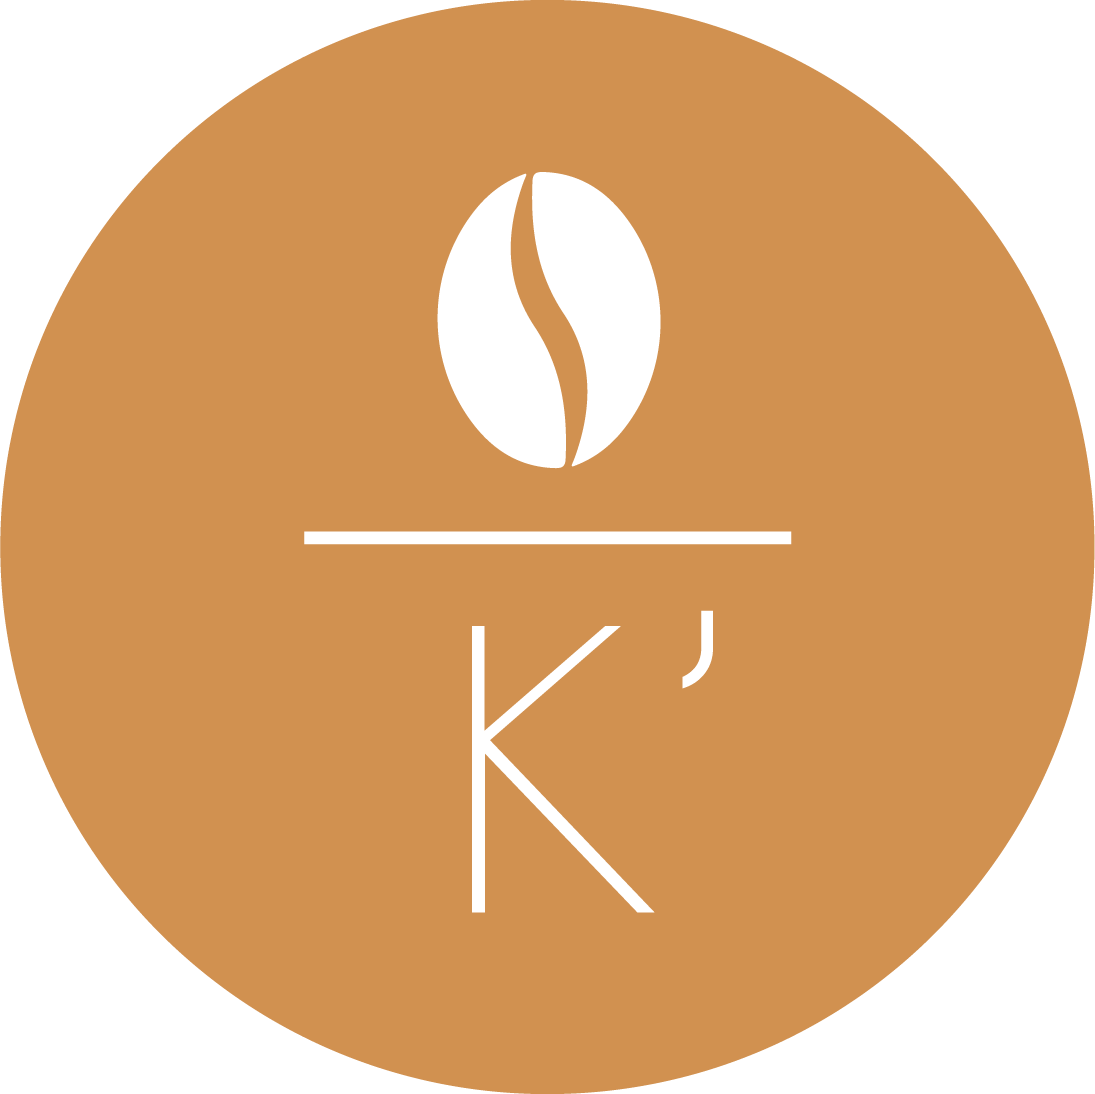 Kumara Cafe Logo